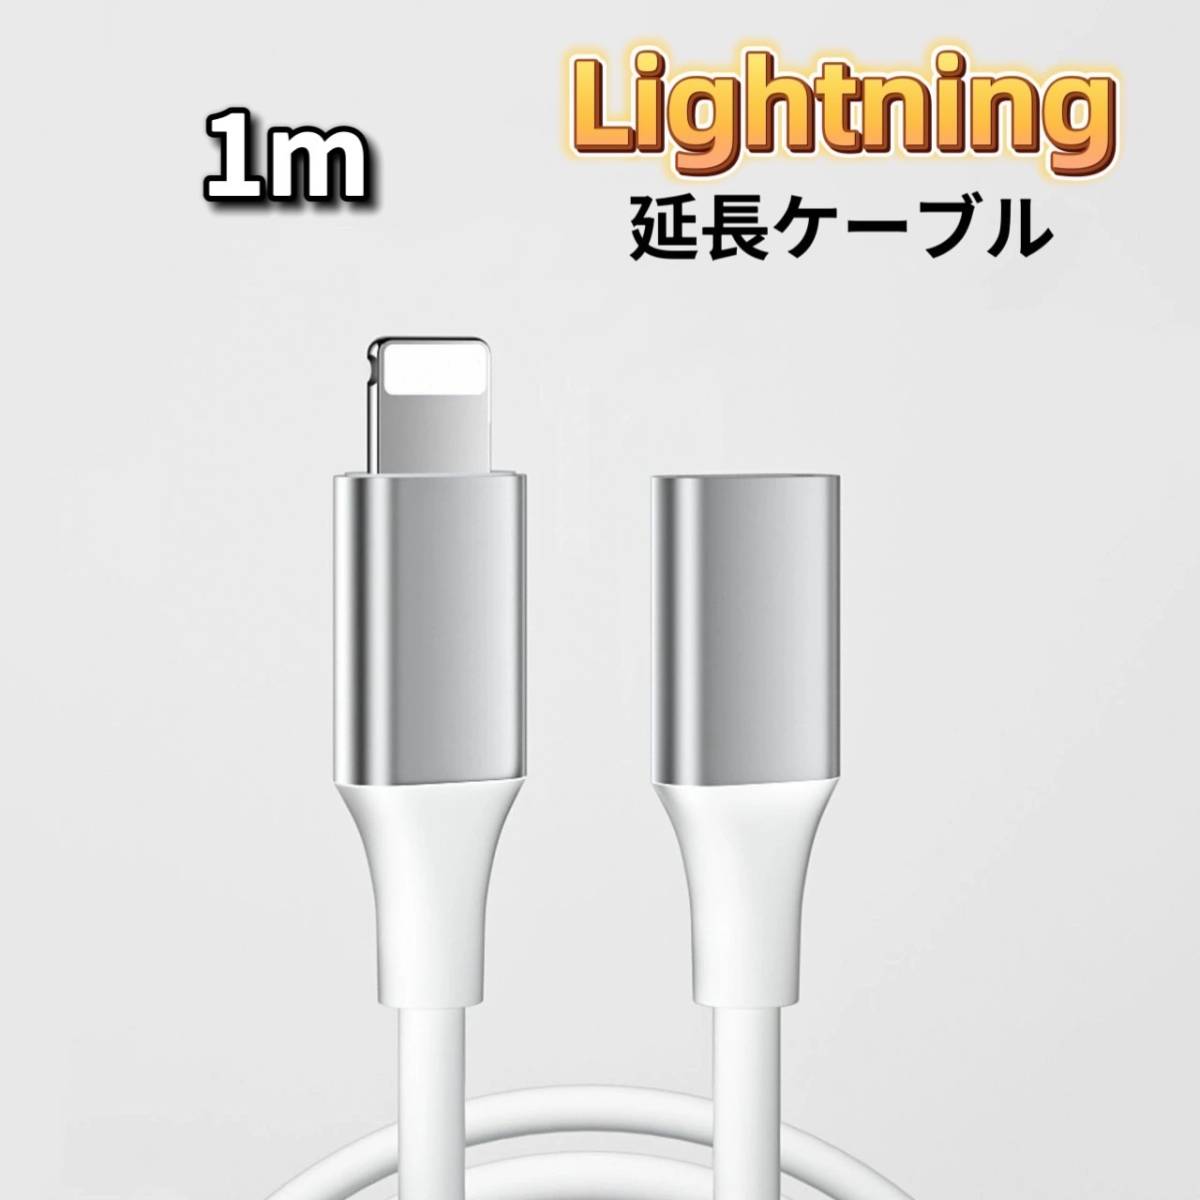 ライトニング 延長ケーブル 1m Lightning 延長コード iPhone 延長ケーブル iPad 延長ケーブル iPhone_画像1